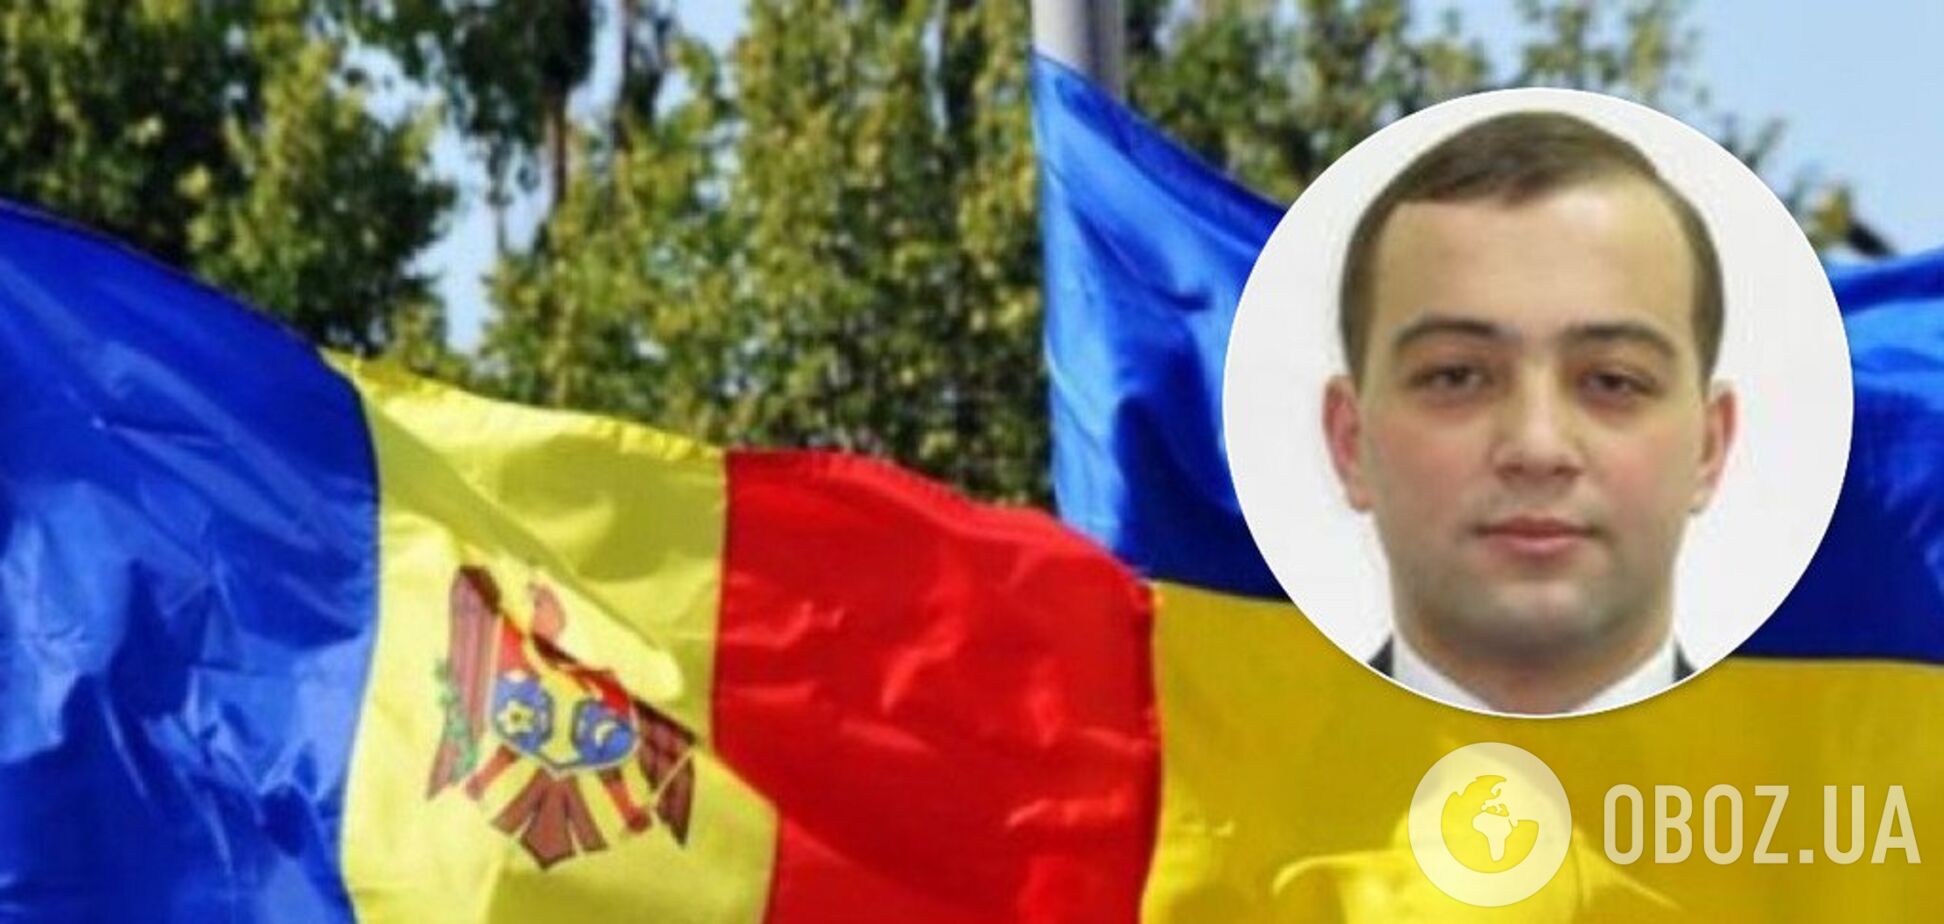 Отдать румынам часть Украины: в сети разогнали фейк